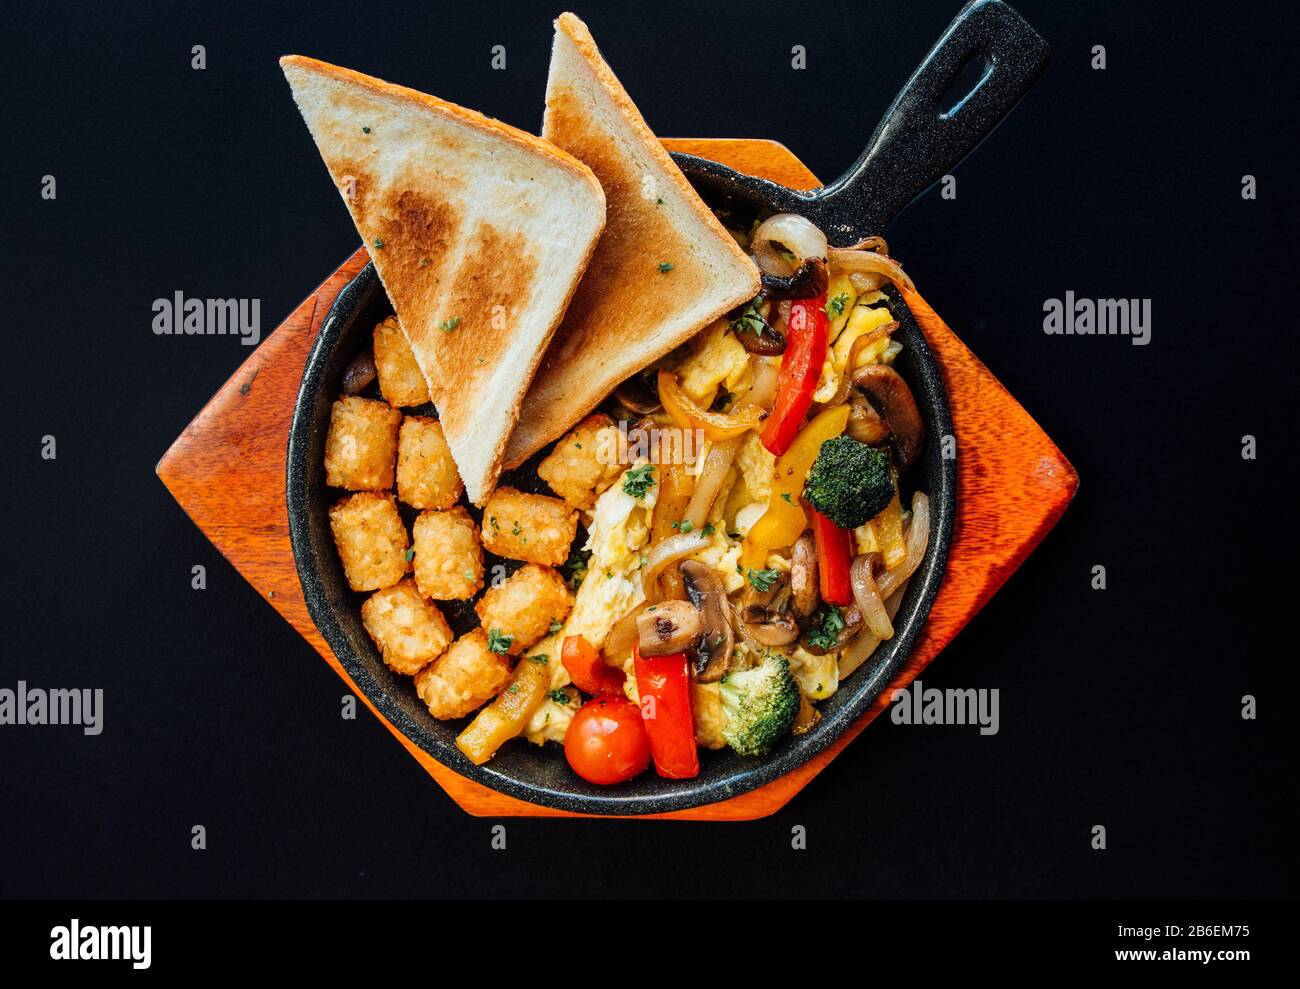 Brunch américain avec pain grillé, hash brun et divers légumes sur une plaque en bois Banque D'Images